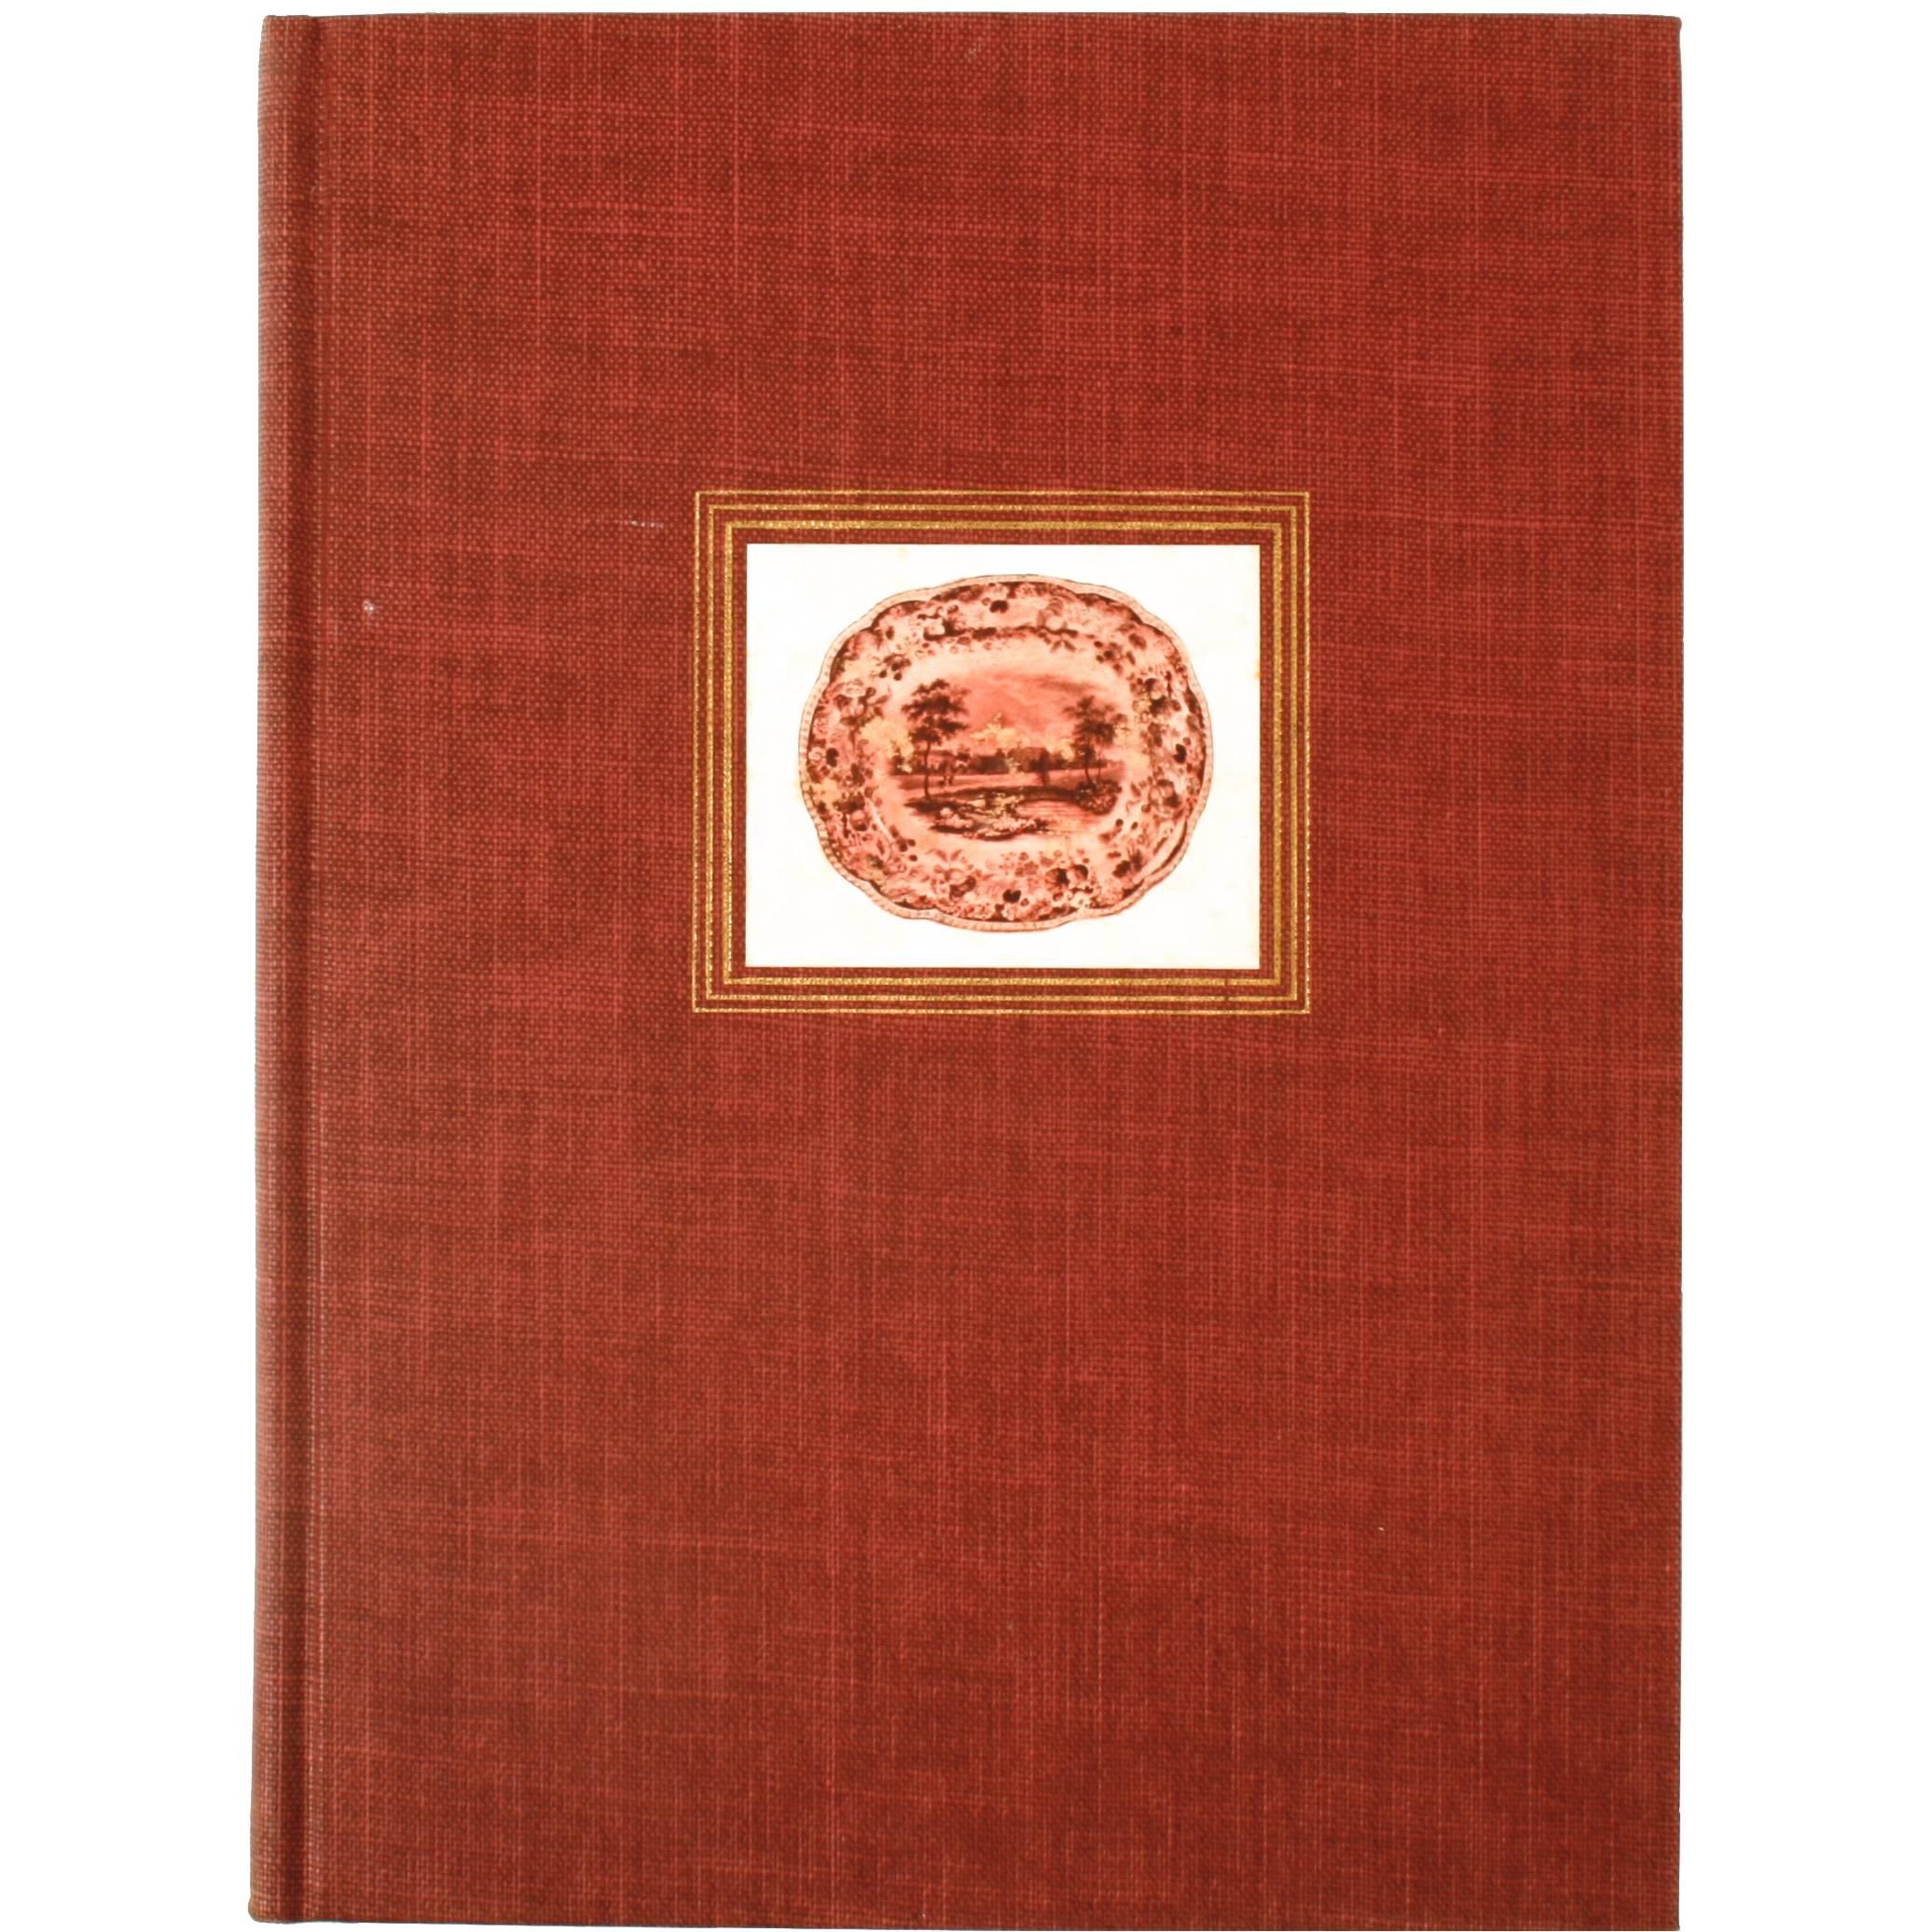 Première édition signée « American Historical Views on Staffordshire China » (Ventes historiques américaines sur la Chine du Staffordshire)